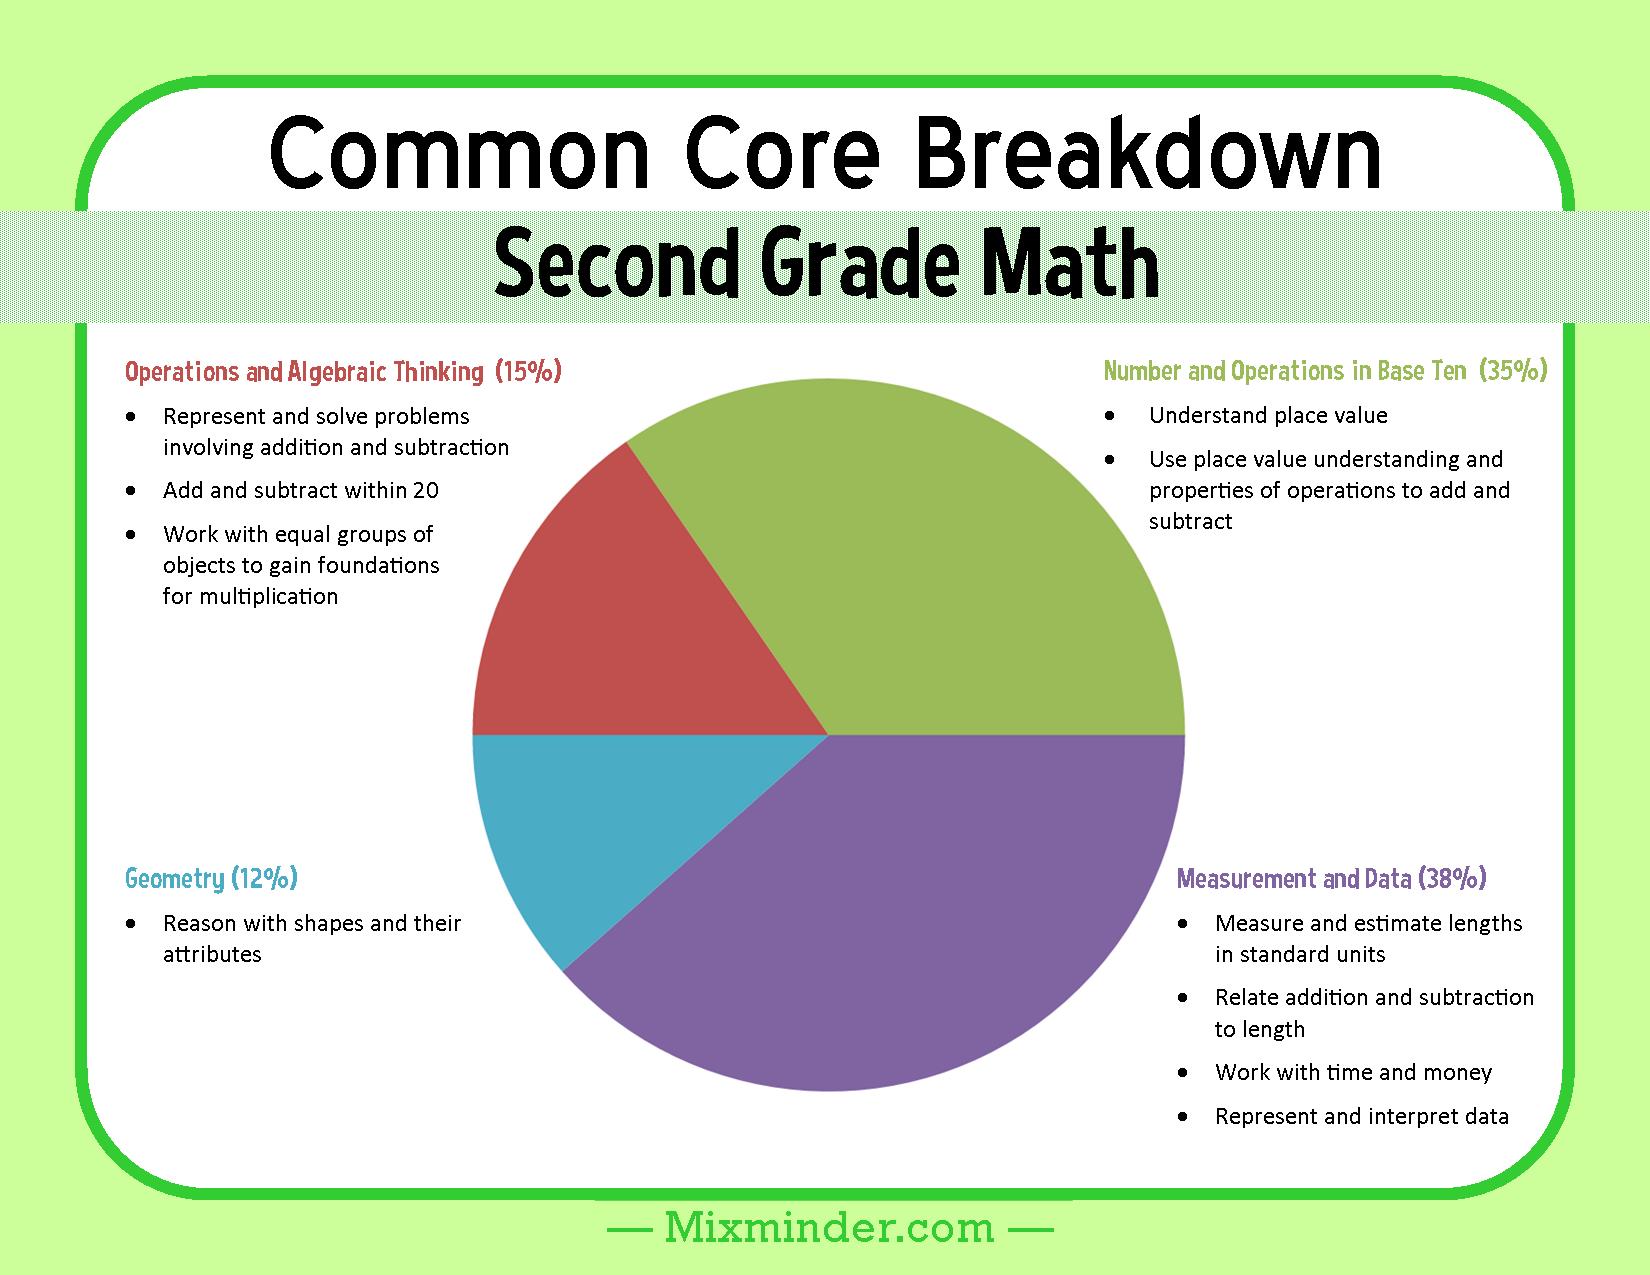 Second Grade Math Common Core Breakdown